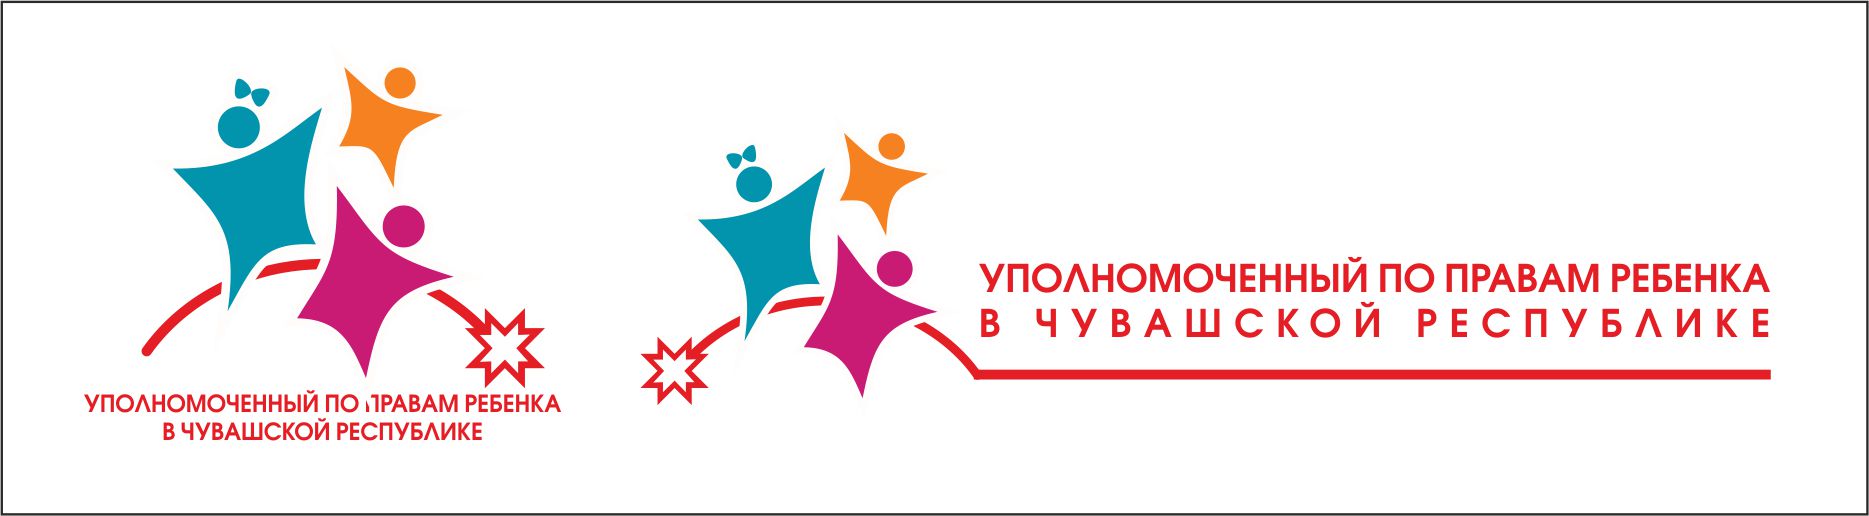 Уполномоченный по правам ребенка в Чувашской Республике - Федорова Алевтина Николаевна